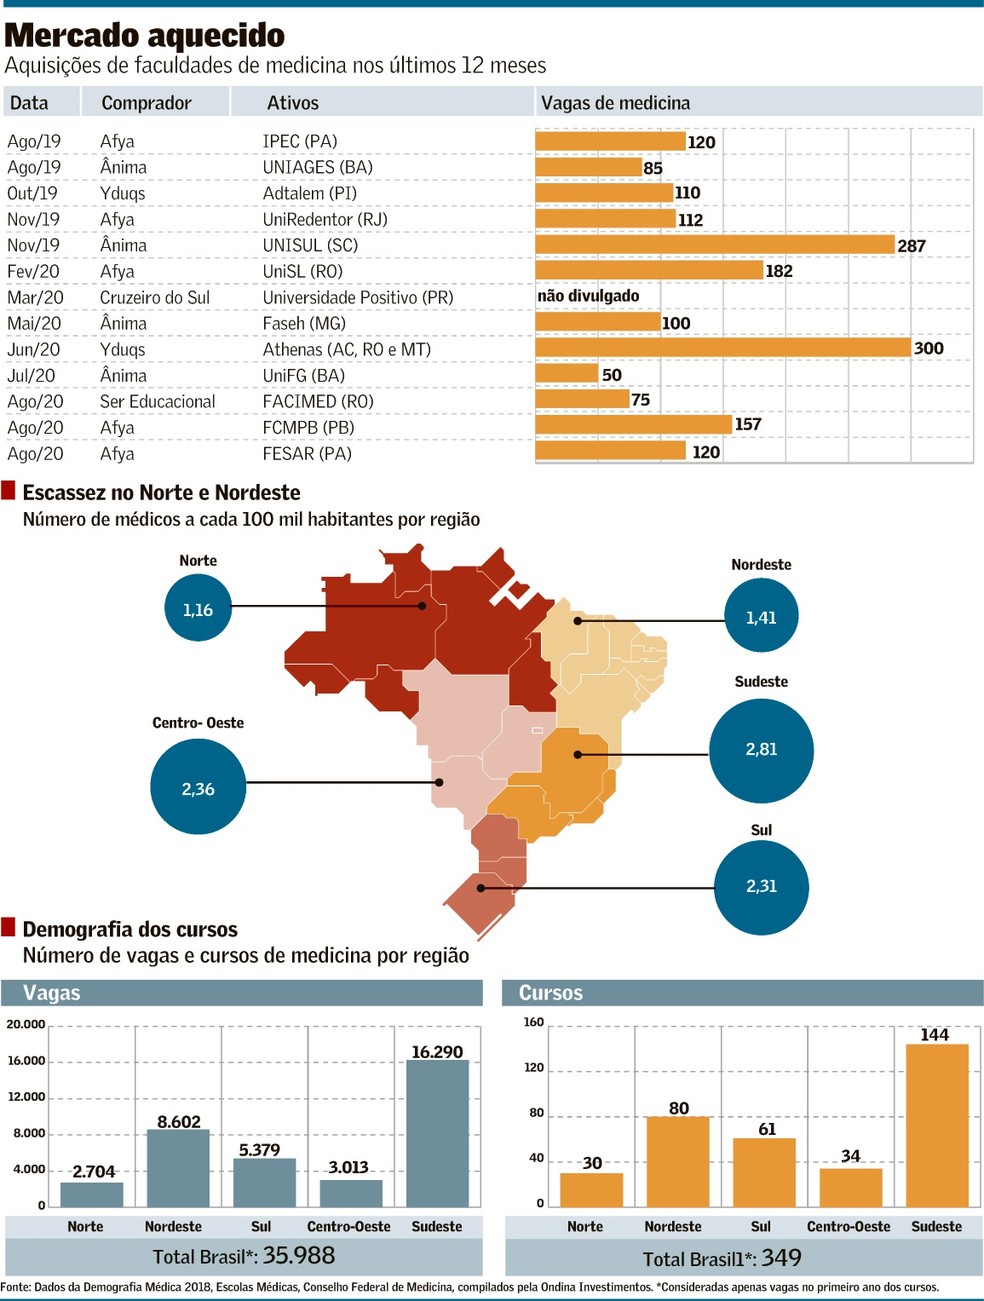 Qual a faculdade de Medicina mais barata do Brasil?